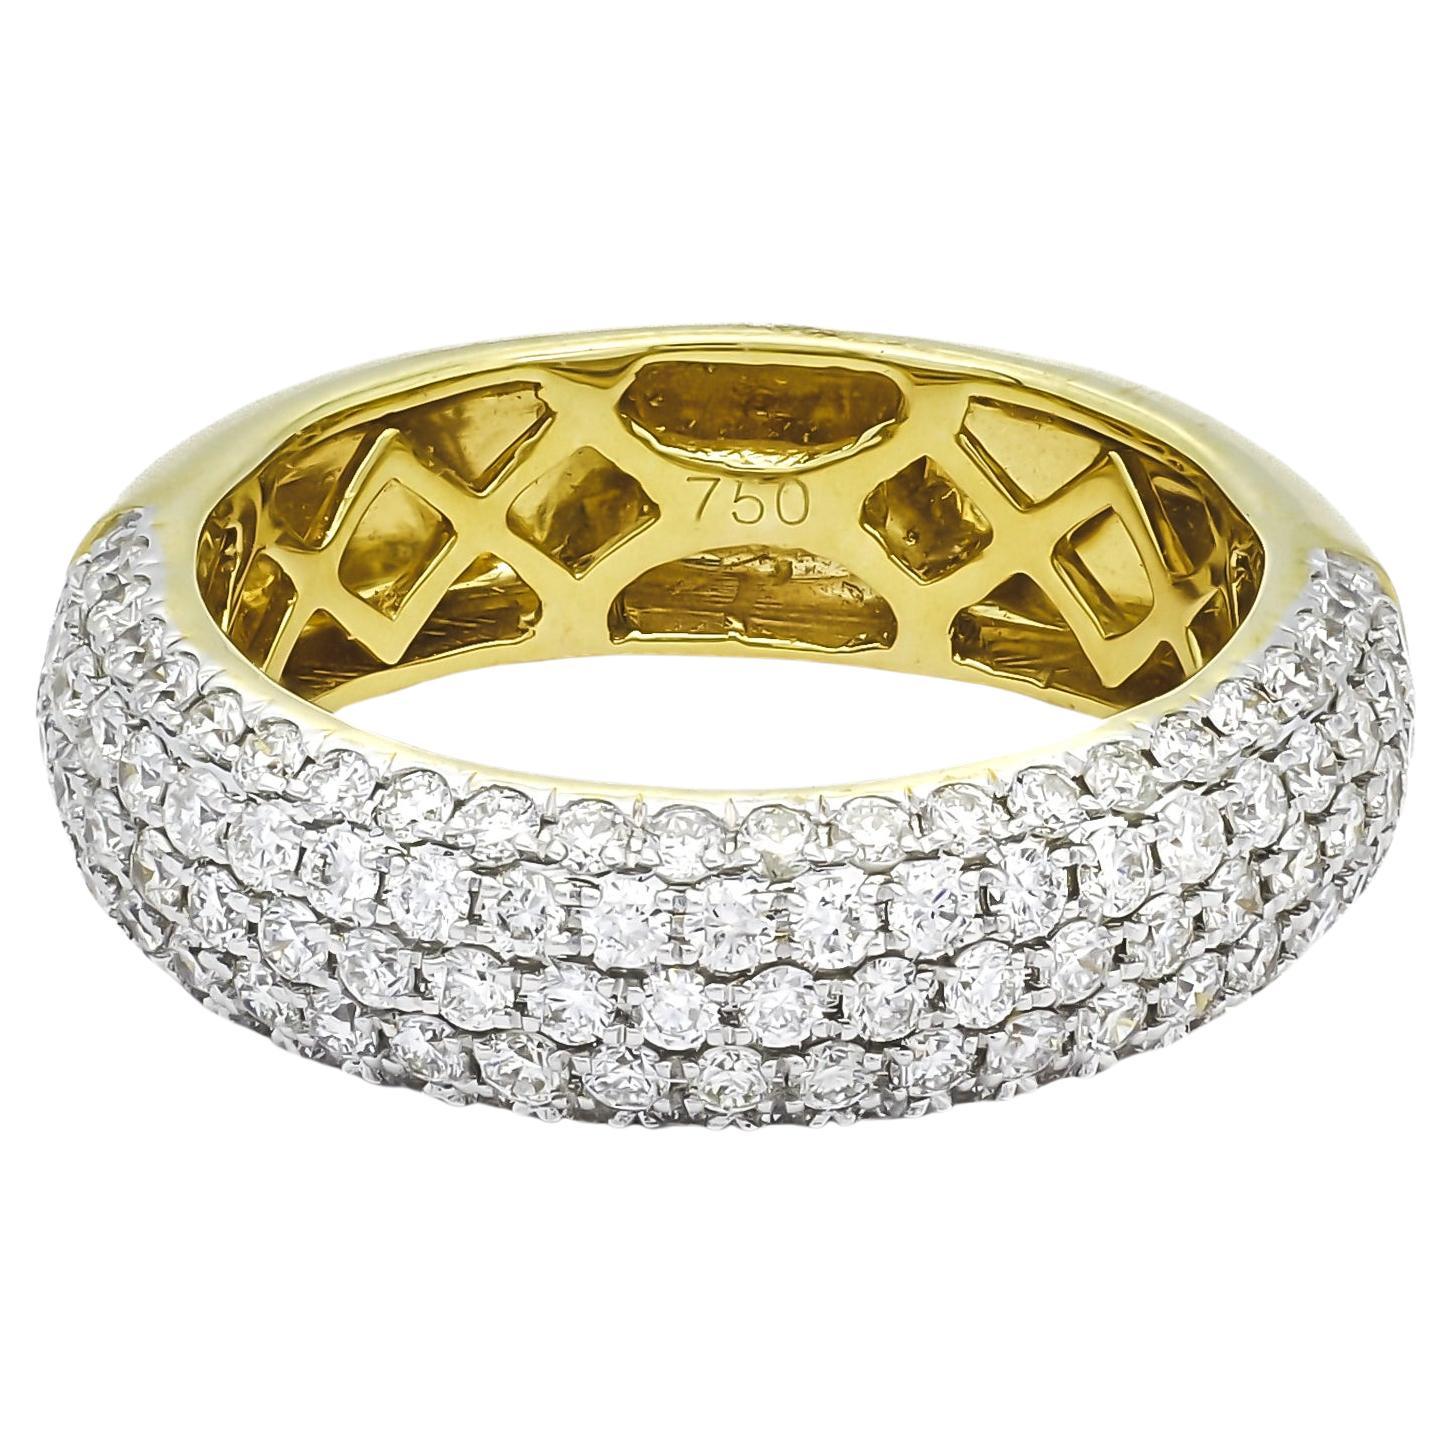 Natural Diamond Ring 1.25 cts 18 Karat Yellow Gold Multi Row Band Ring 